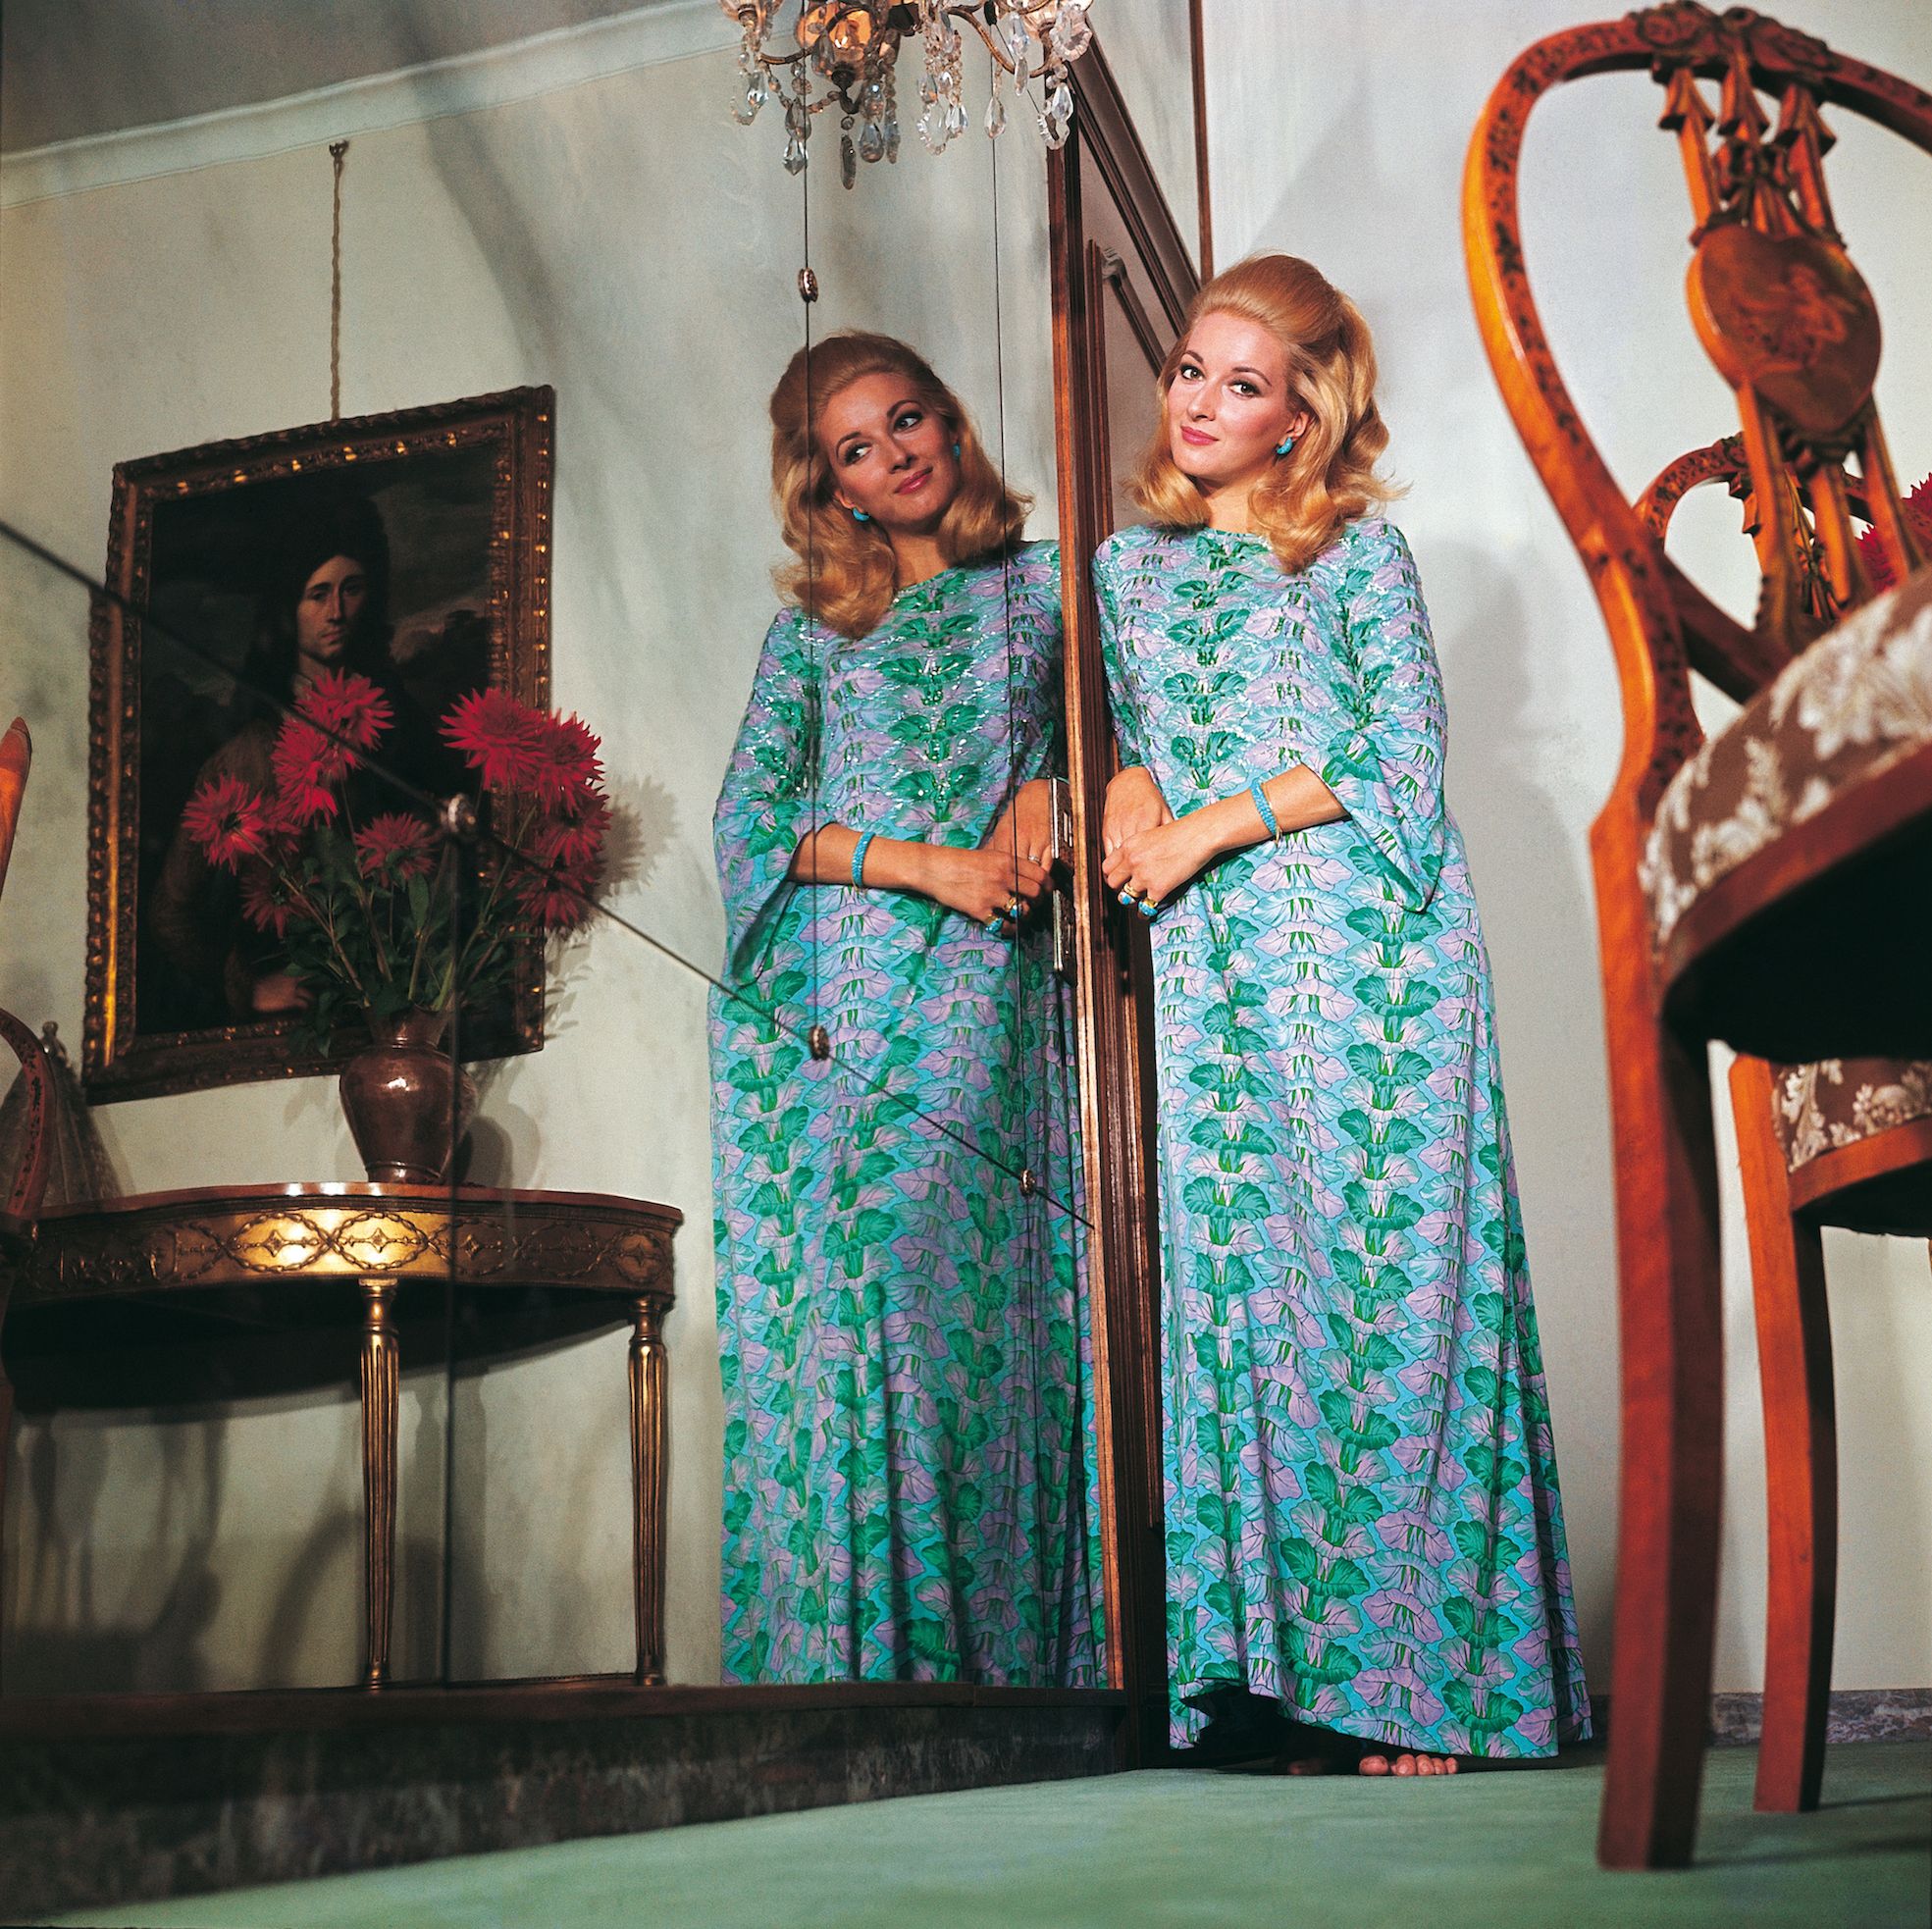 70s Style Inspo - Dresses & Democracy